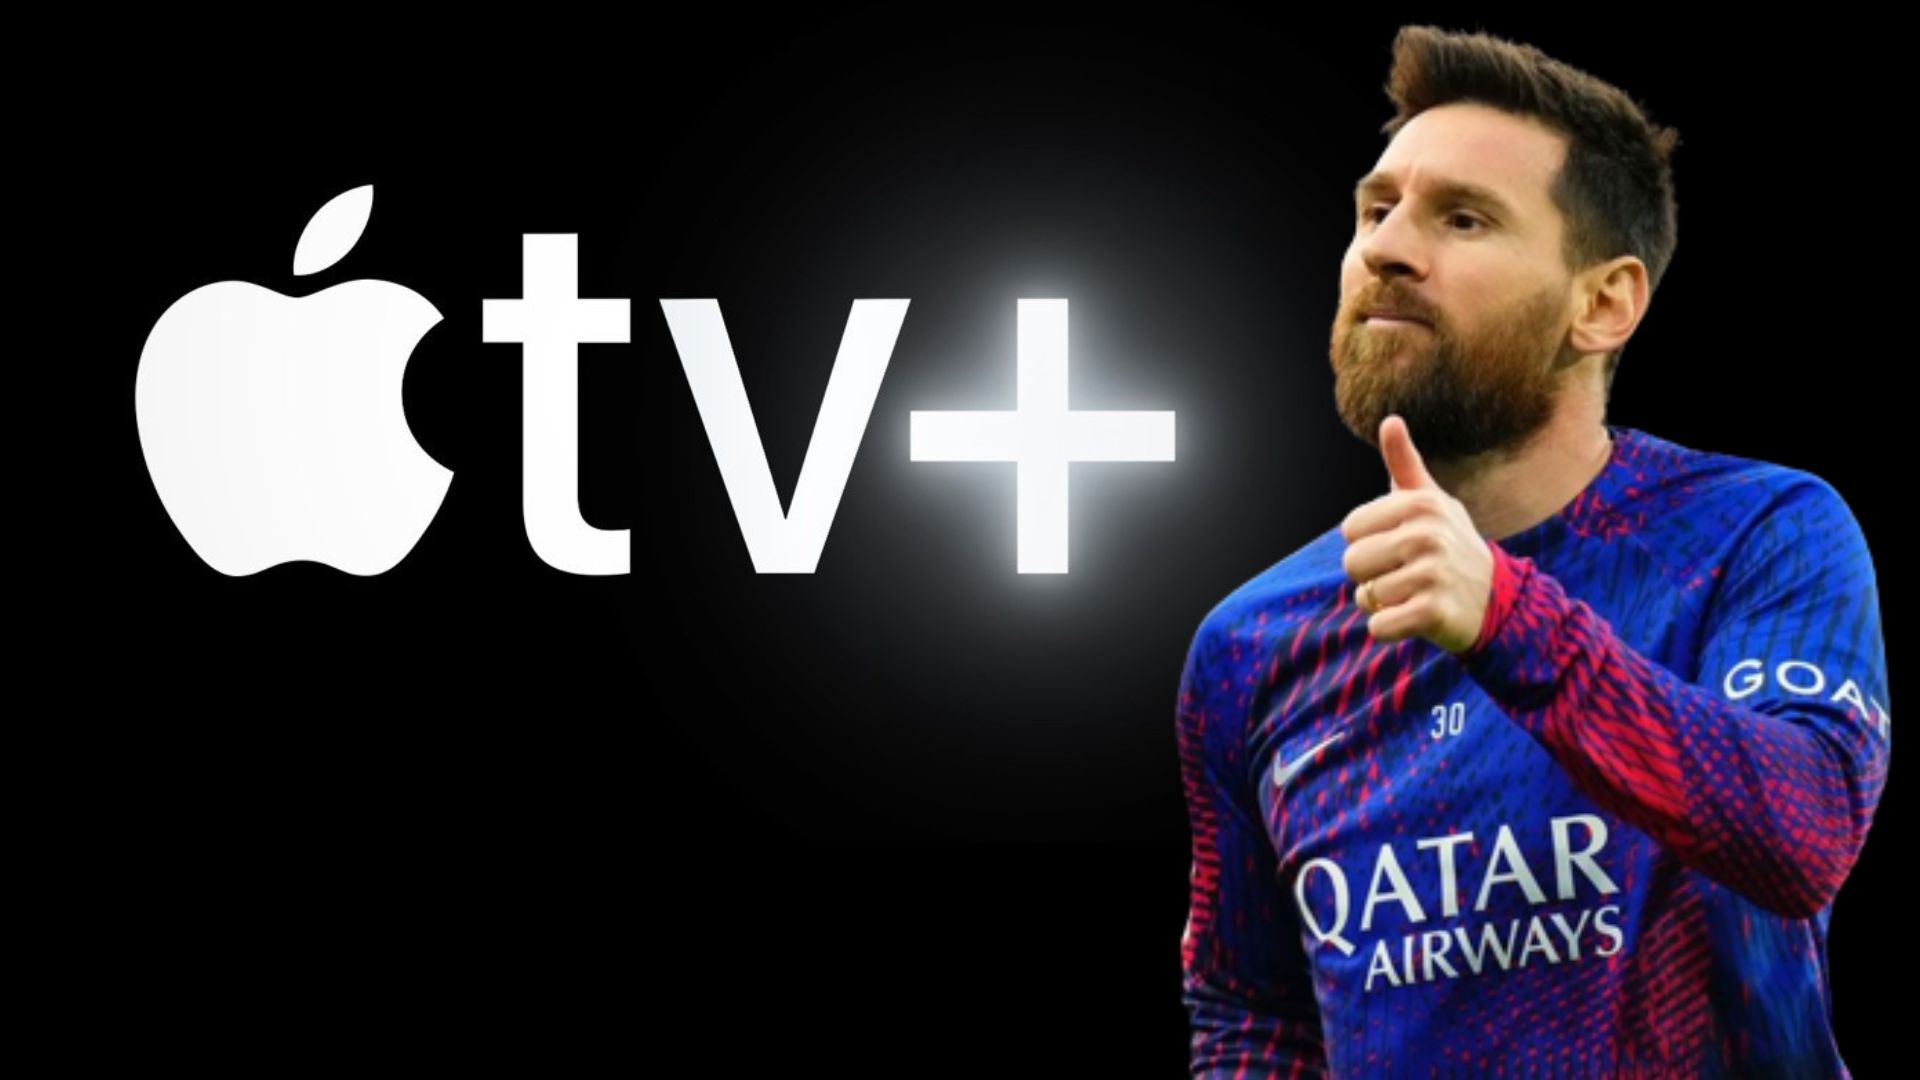 El ascenso de la leyenda: Messi, se estrenó y está disponible en Apple TV